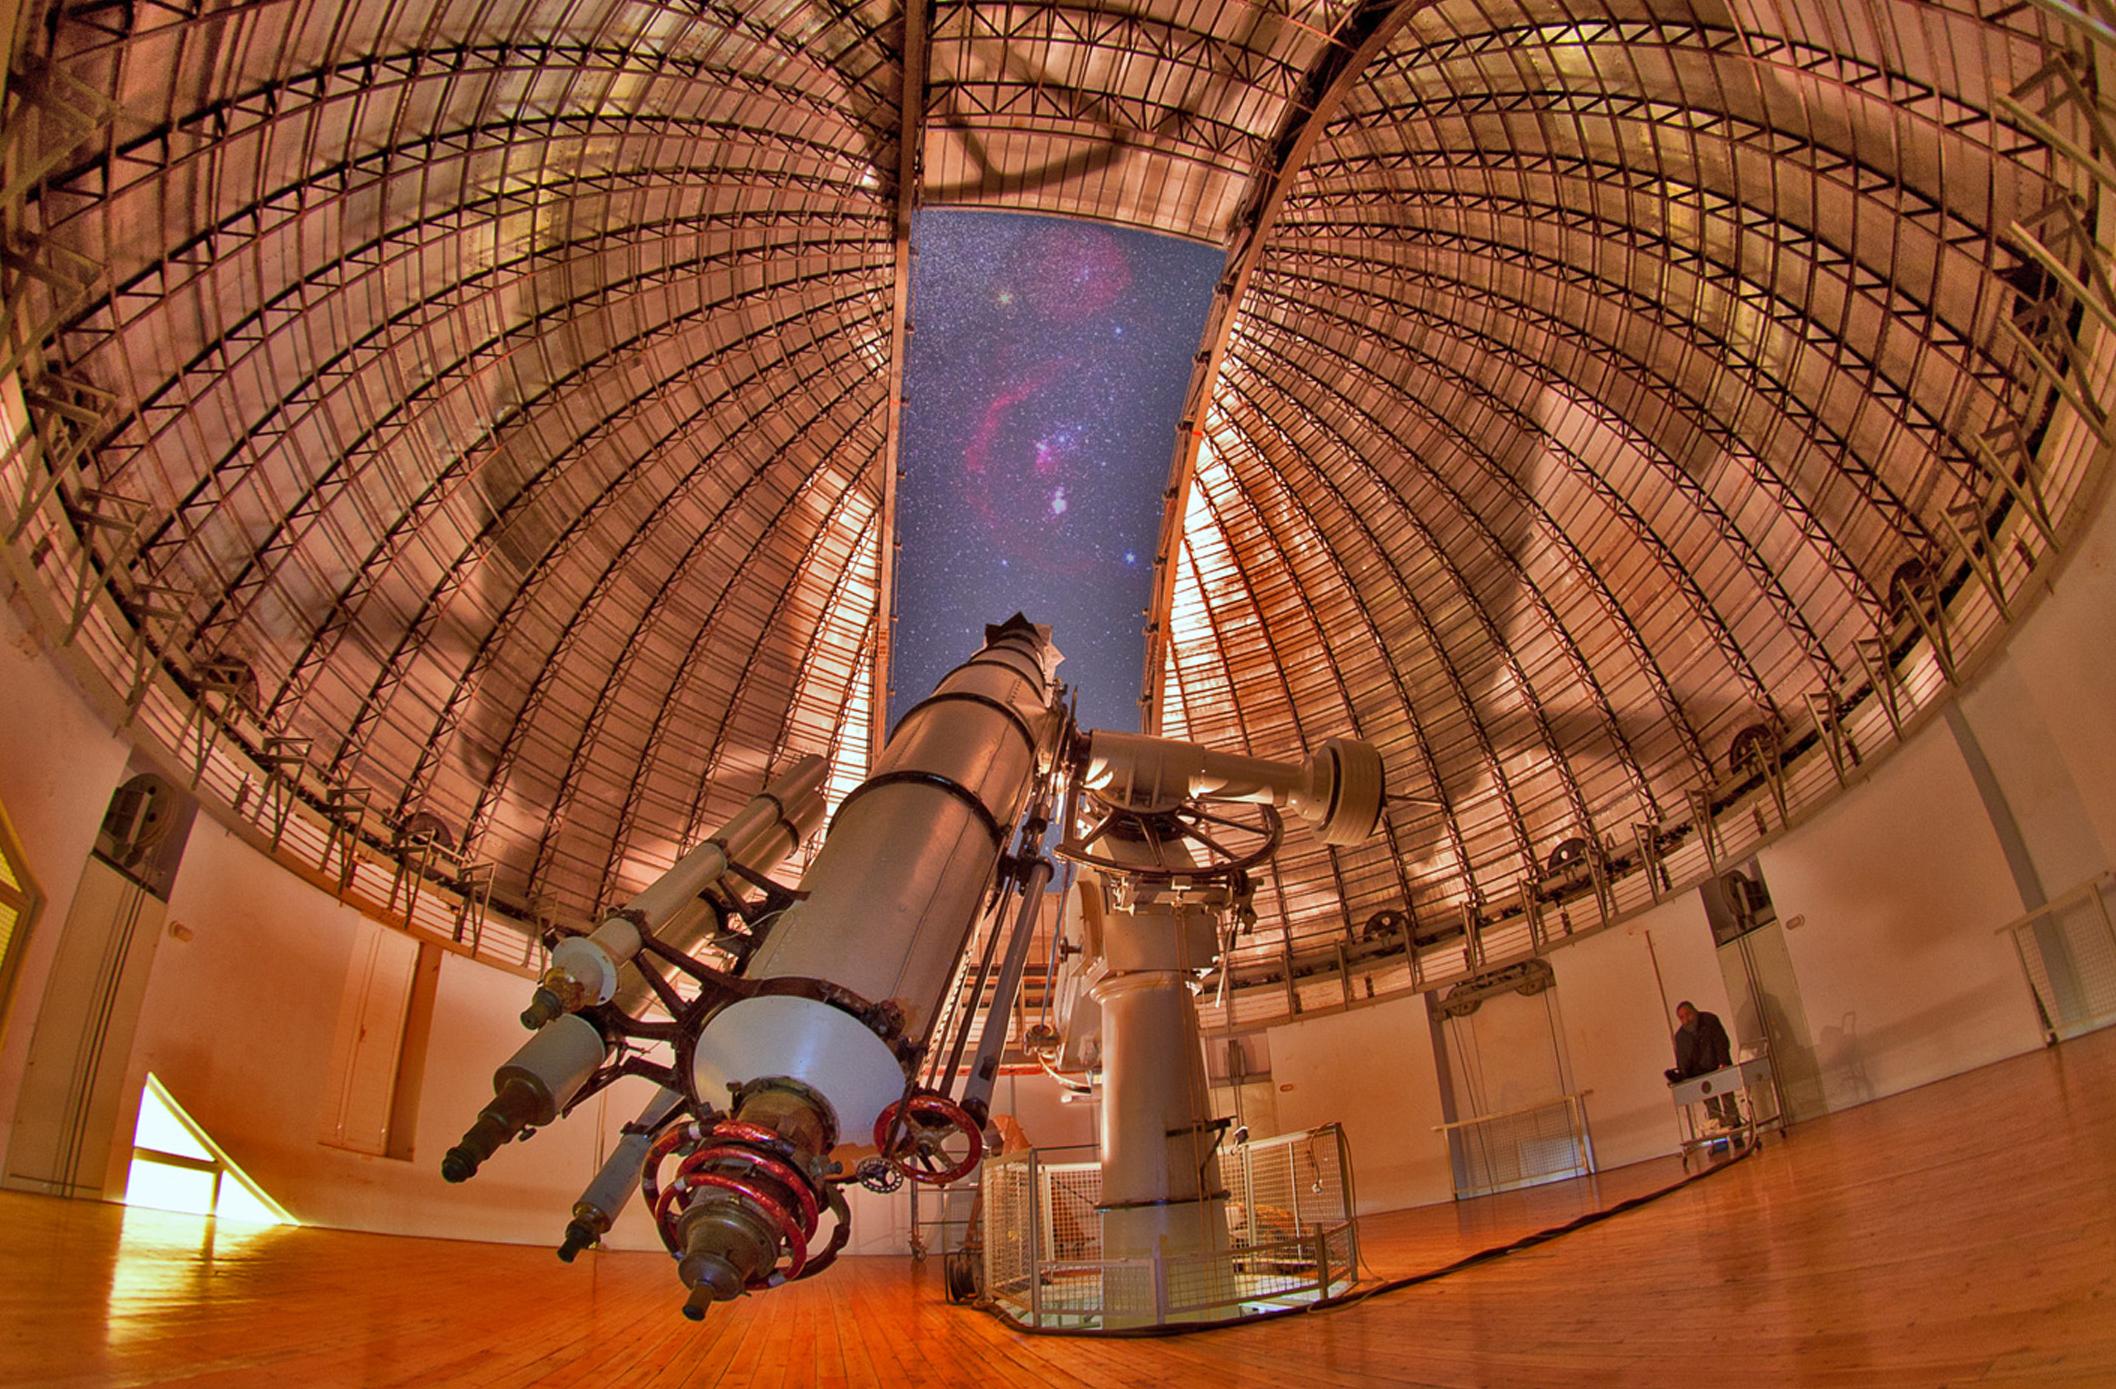 Ιστορικό τηλεσκόπιο επαναλειτουργεί στο αστεροσκοπείο Πεντέλης